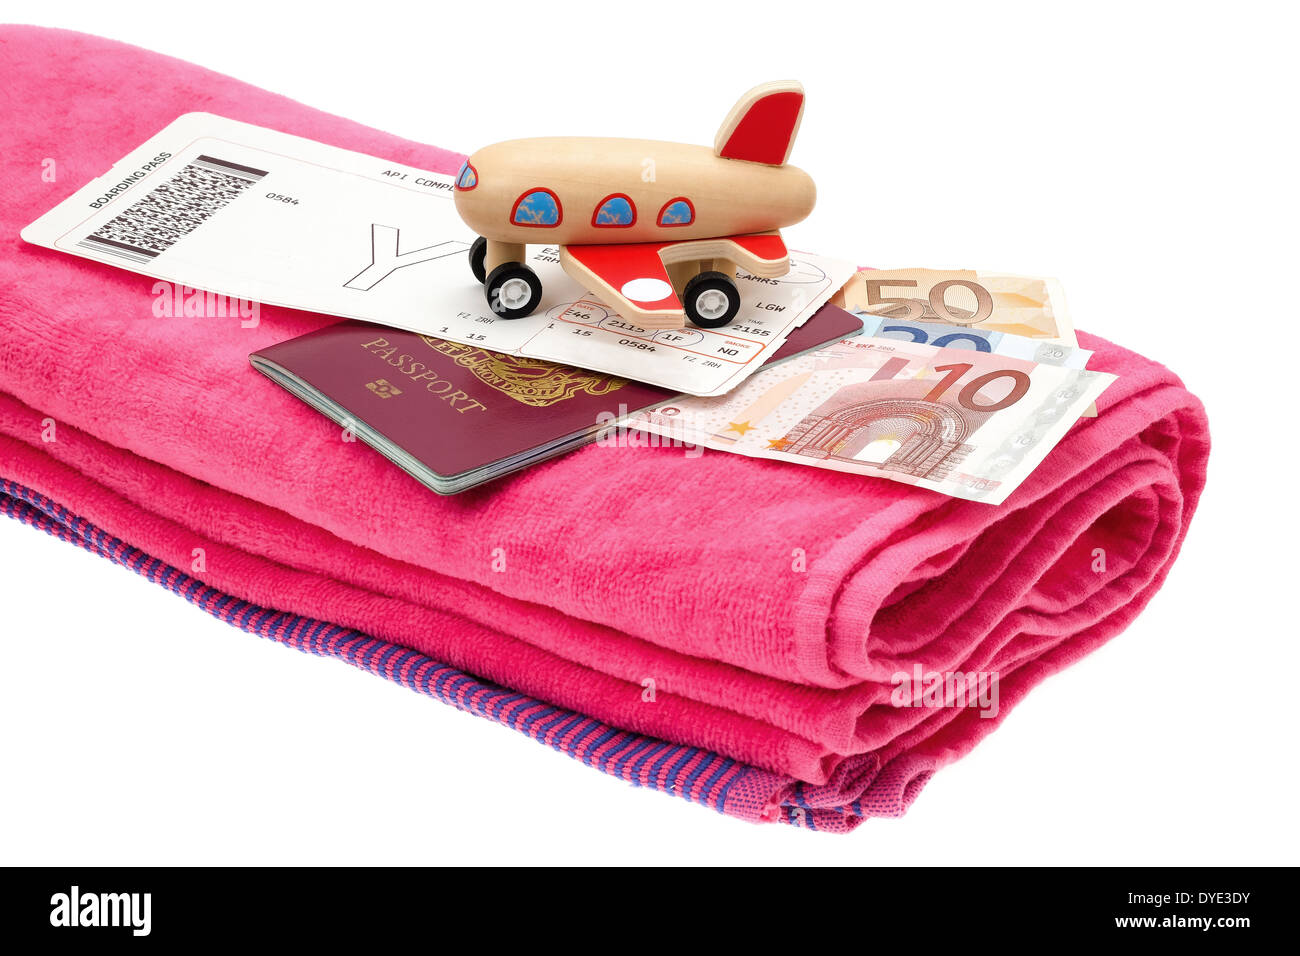 Urlaub und Reisen Konzept Bild eines kleinen Flugzeugs platziert auf einen Pass mit Geld, eine Fluggesellschaft Bordkarte und Handtuch. Stockfoto